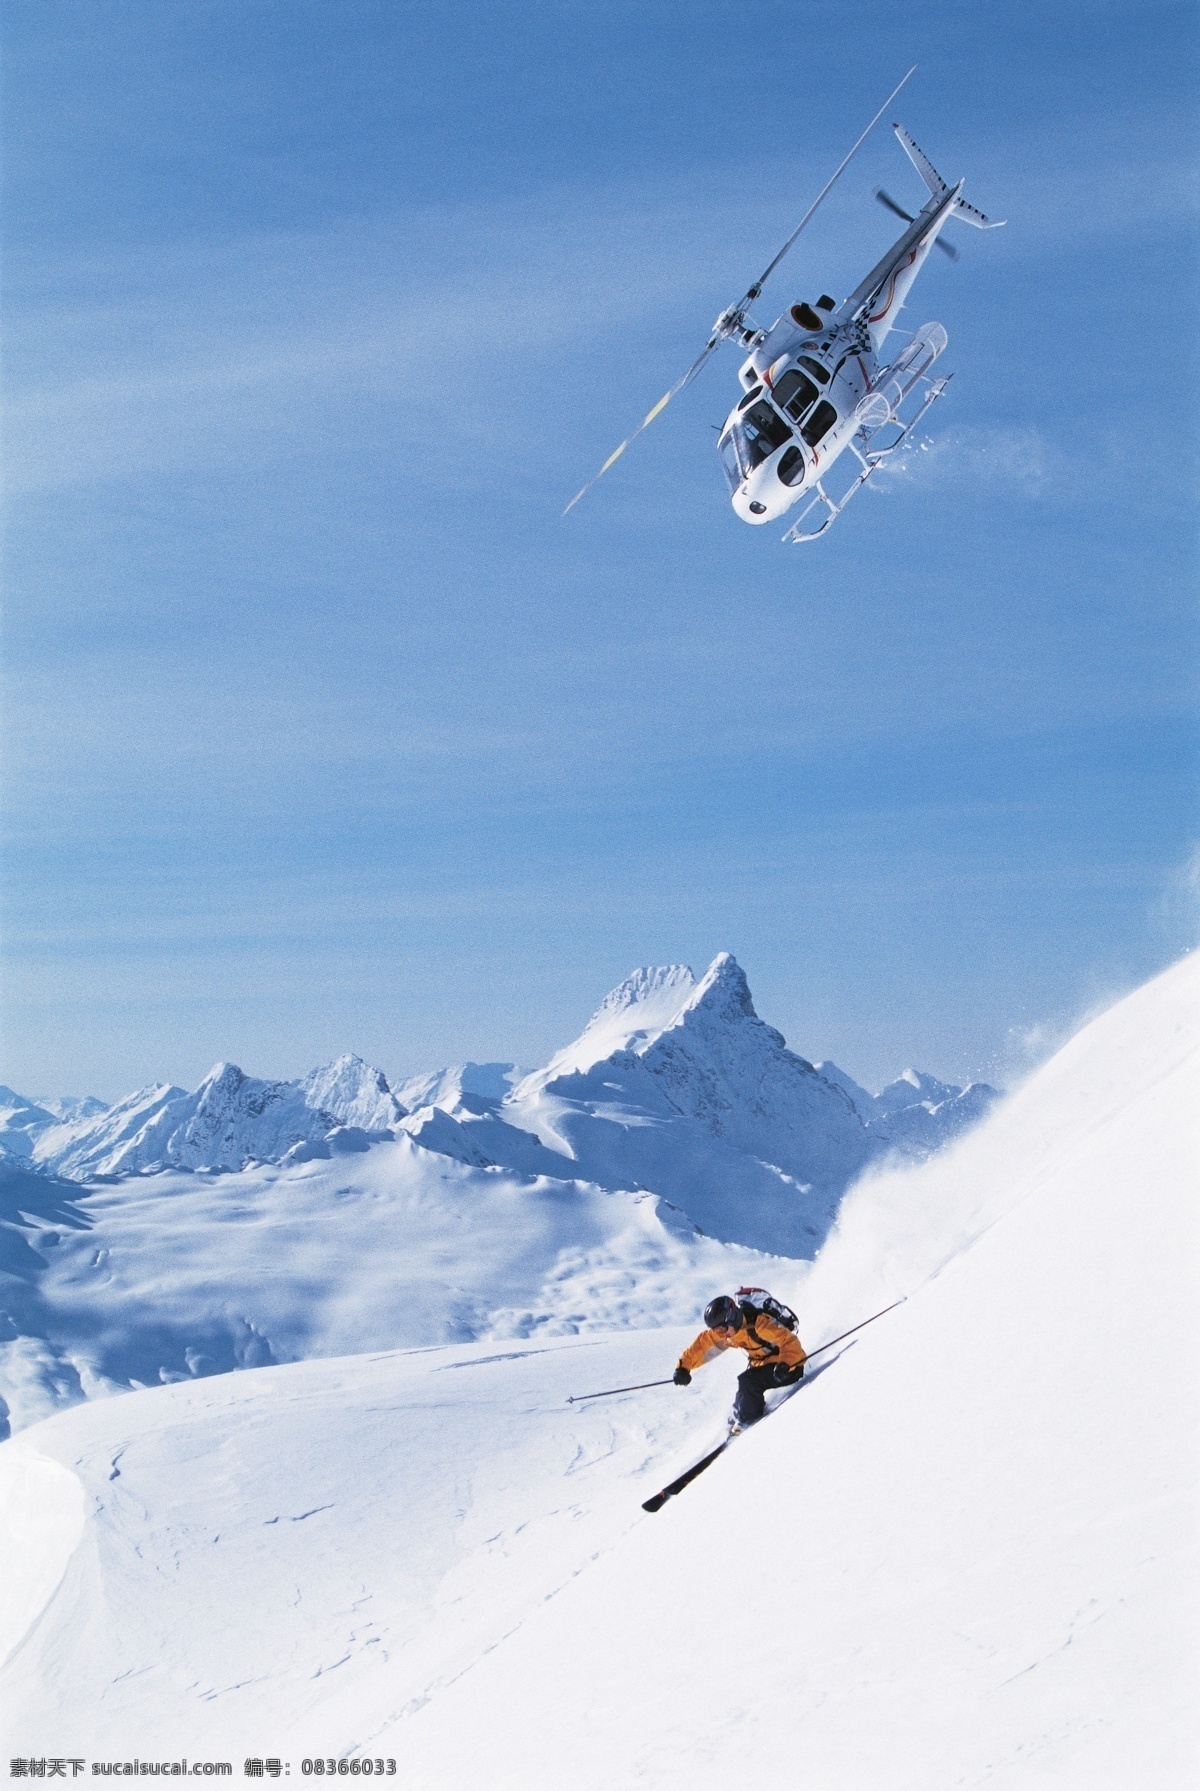 划 雪 人物 飞机图片 高山滑雪 越野滑雪 双板滑雪 飞机 冬天 生活百科 摄影图片 体育运动